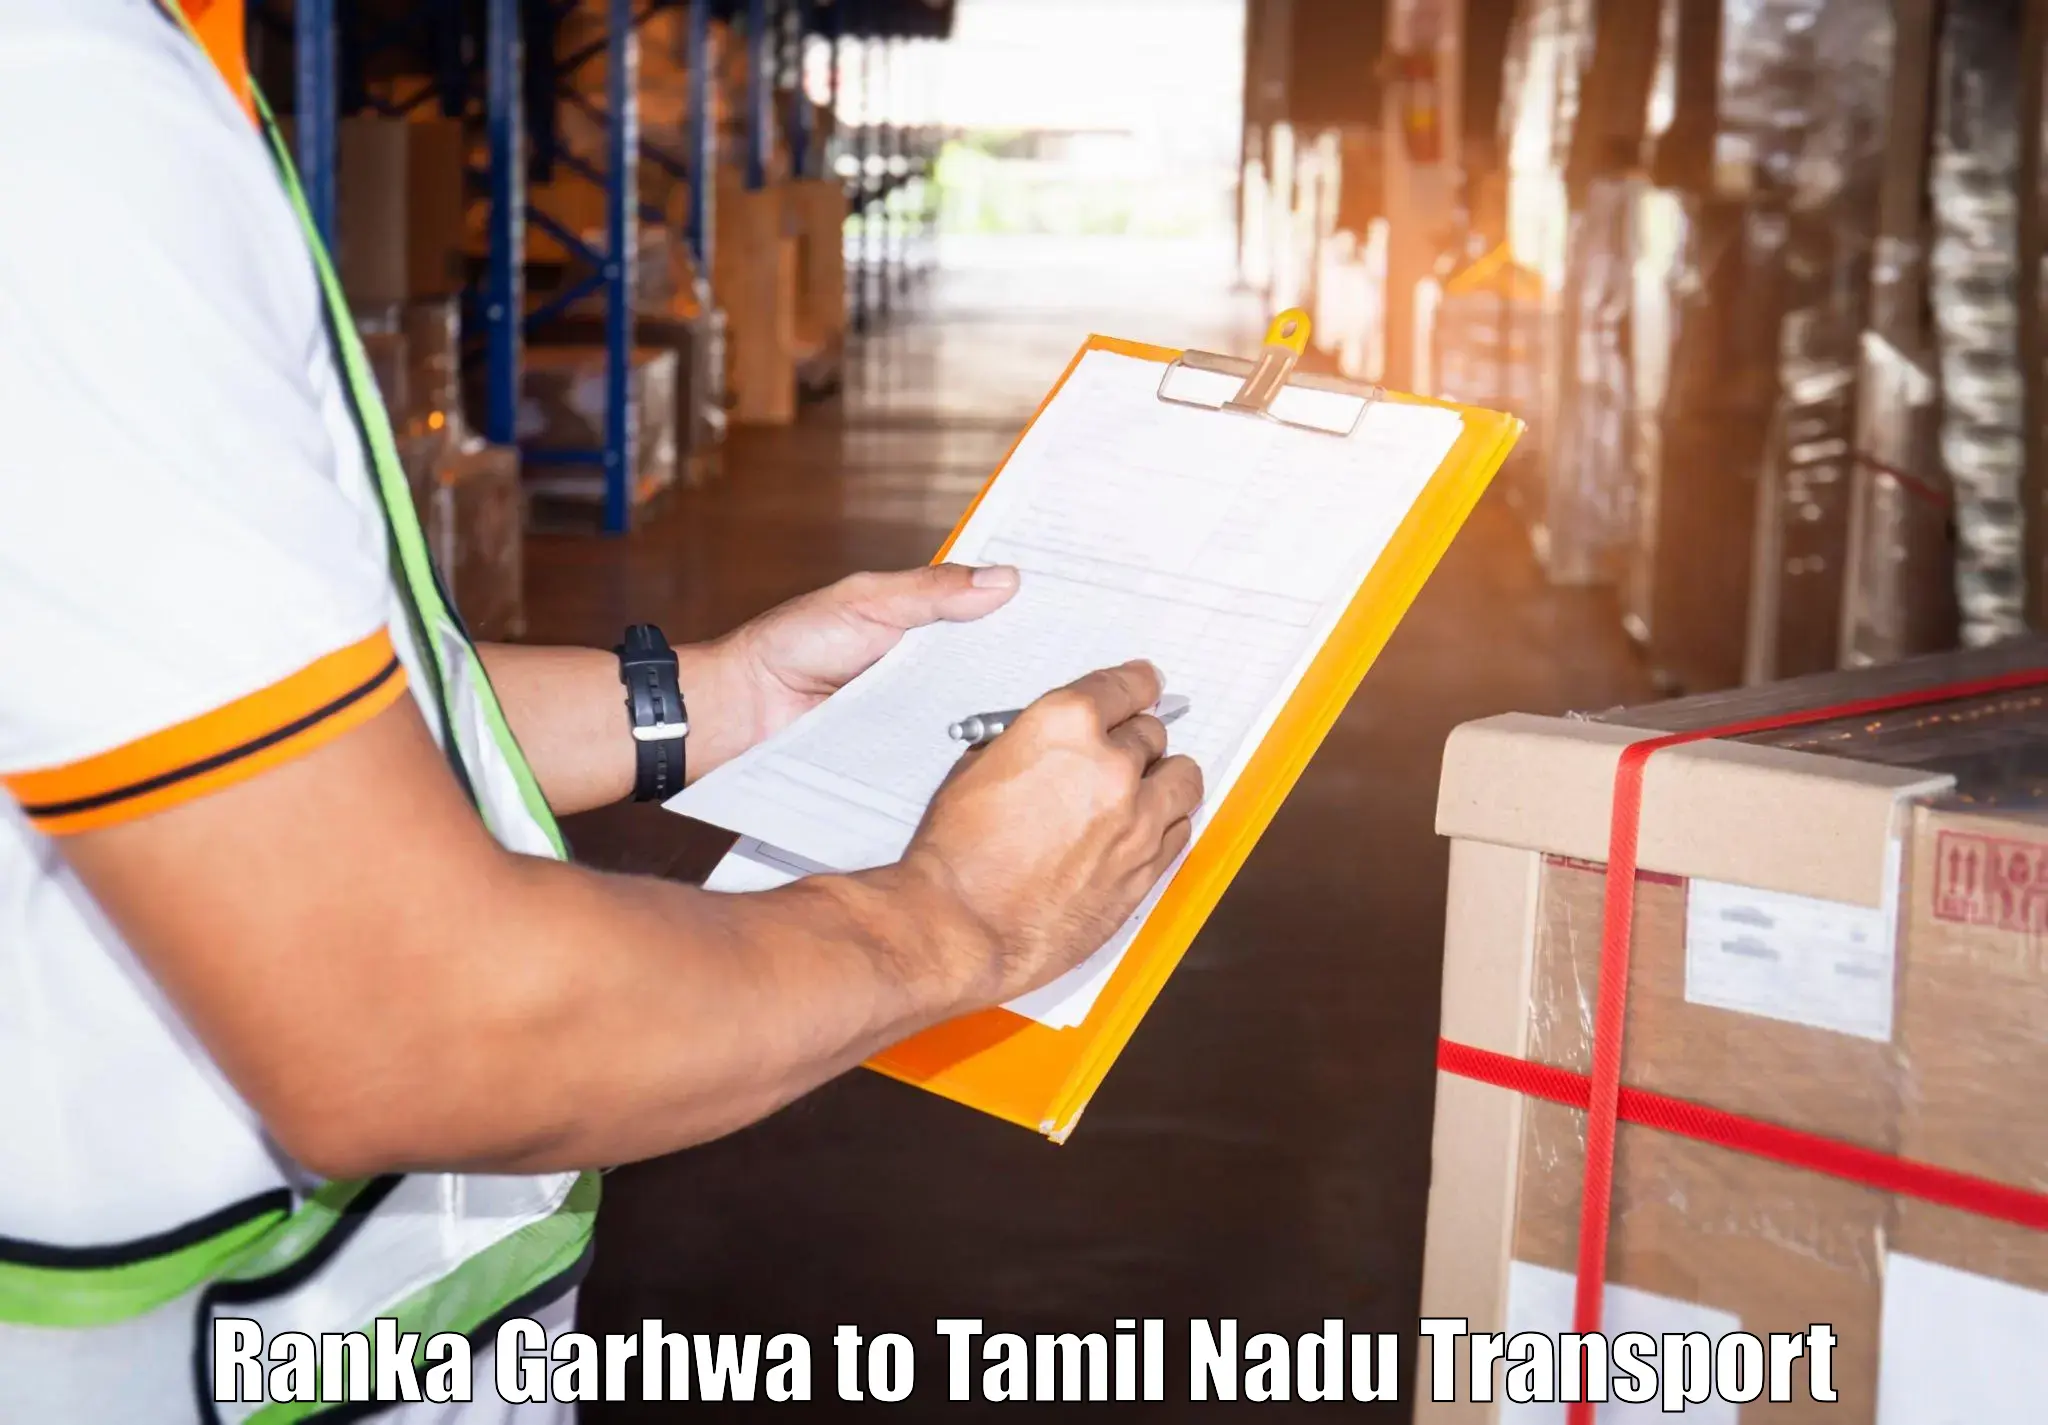 Transport services Ranka Garhwa to Kangeyam